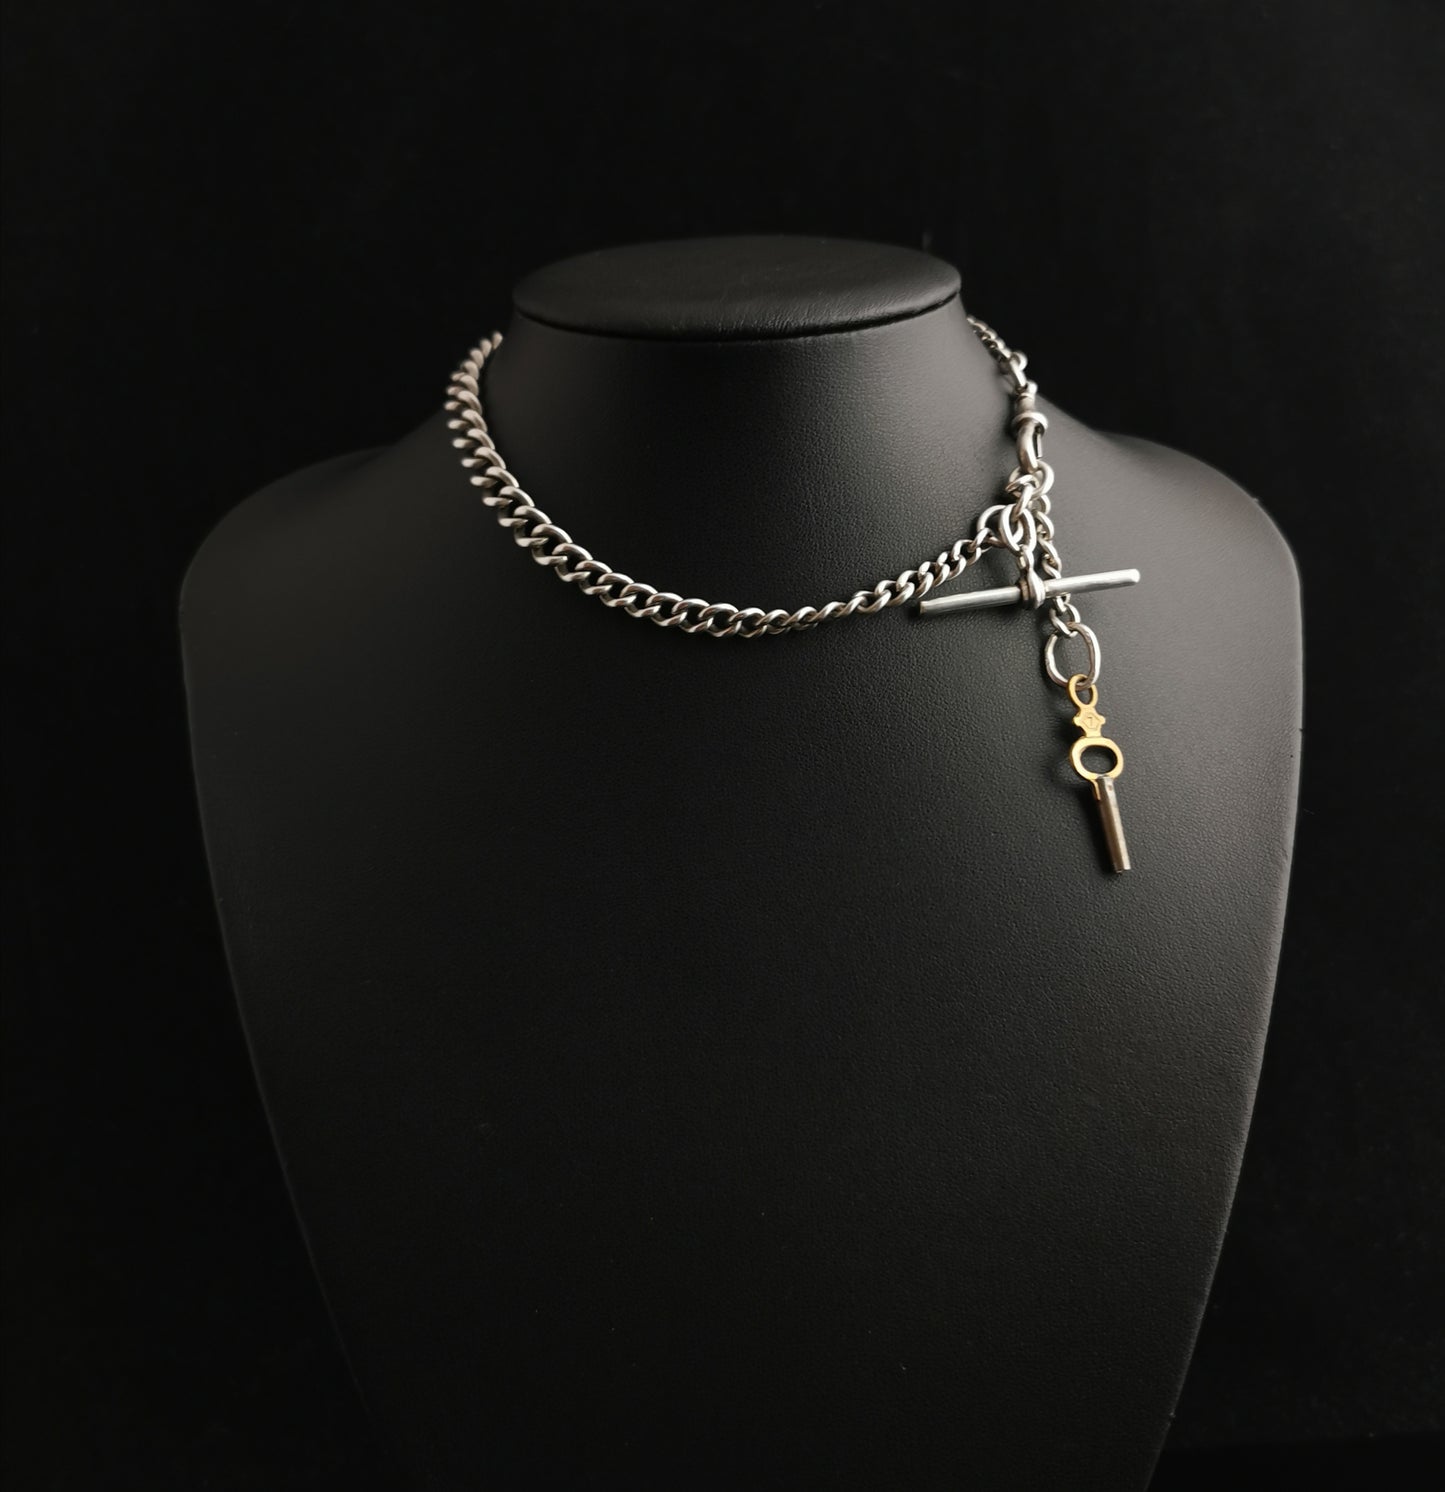 Antique Edwardian silver Albert chain, watch chain